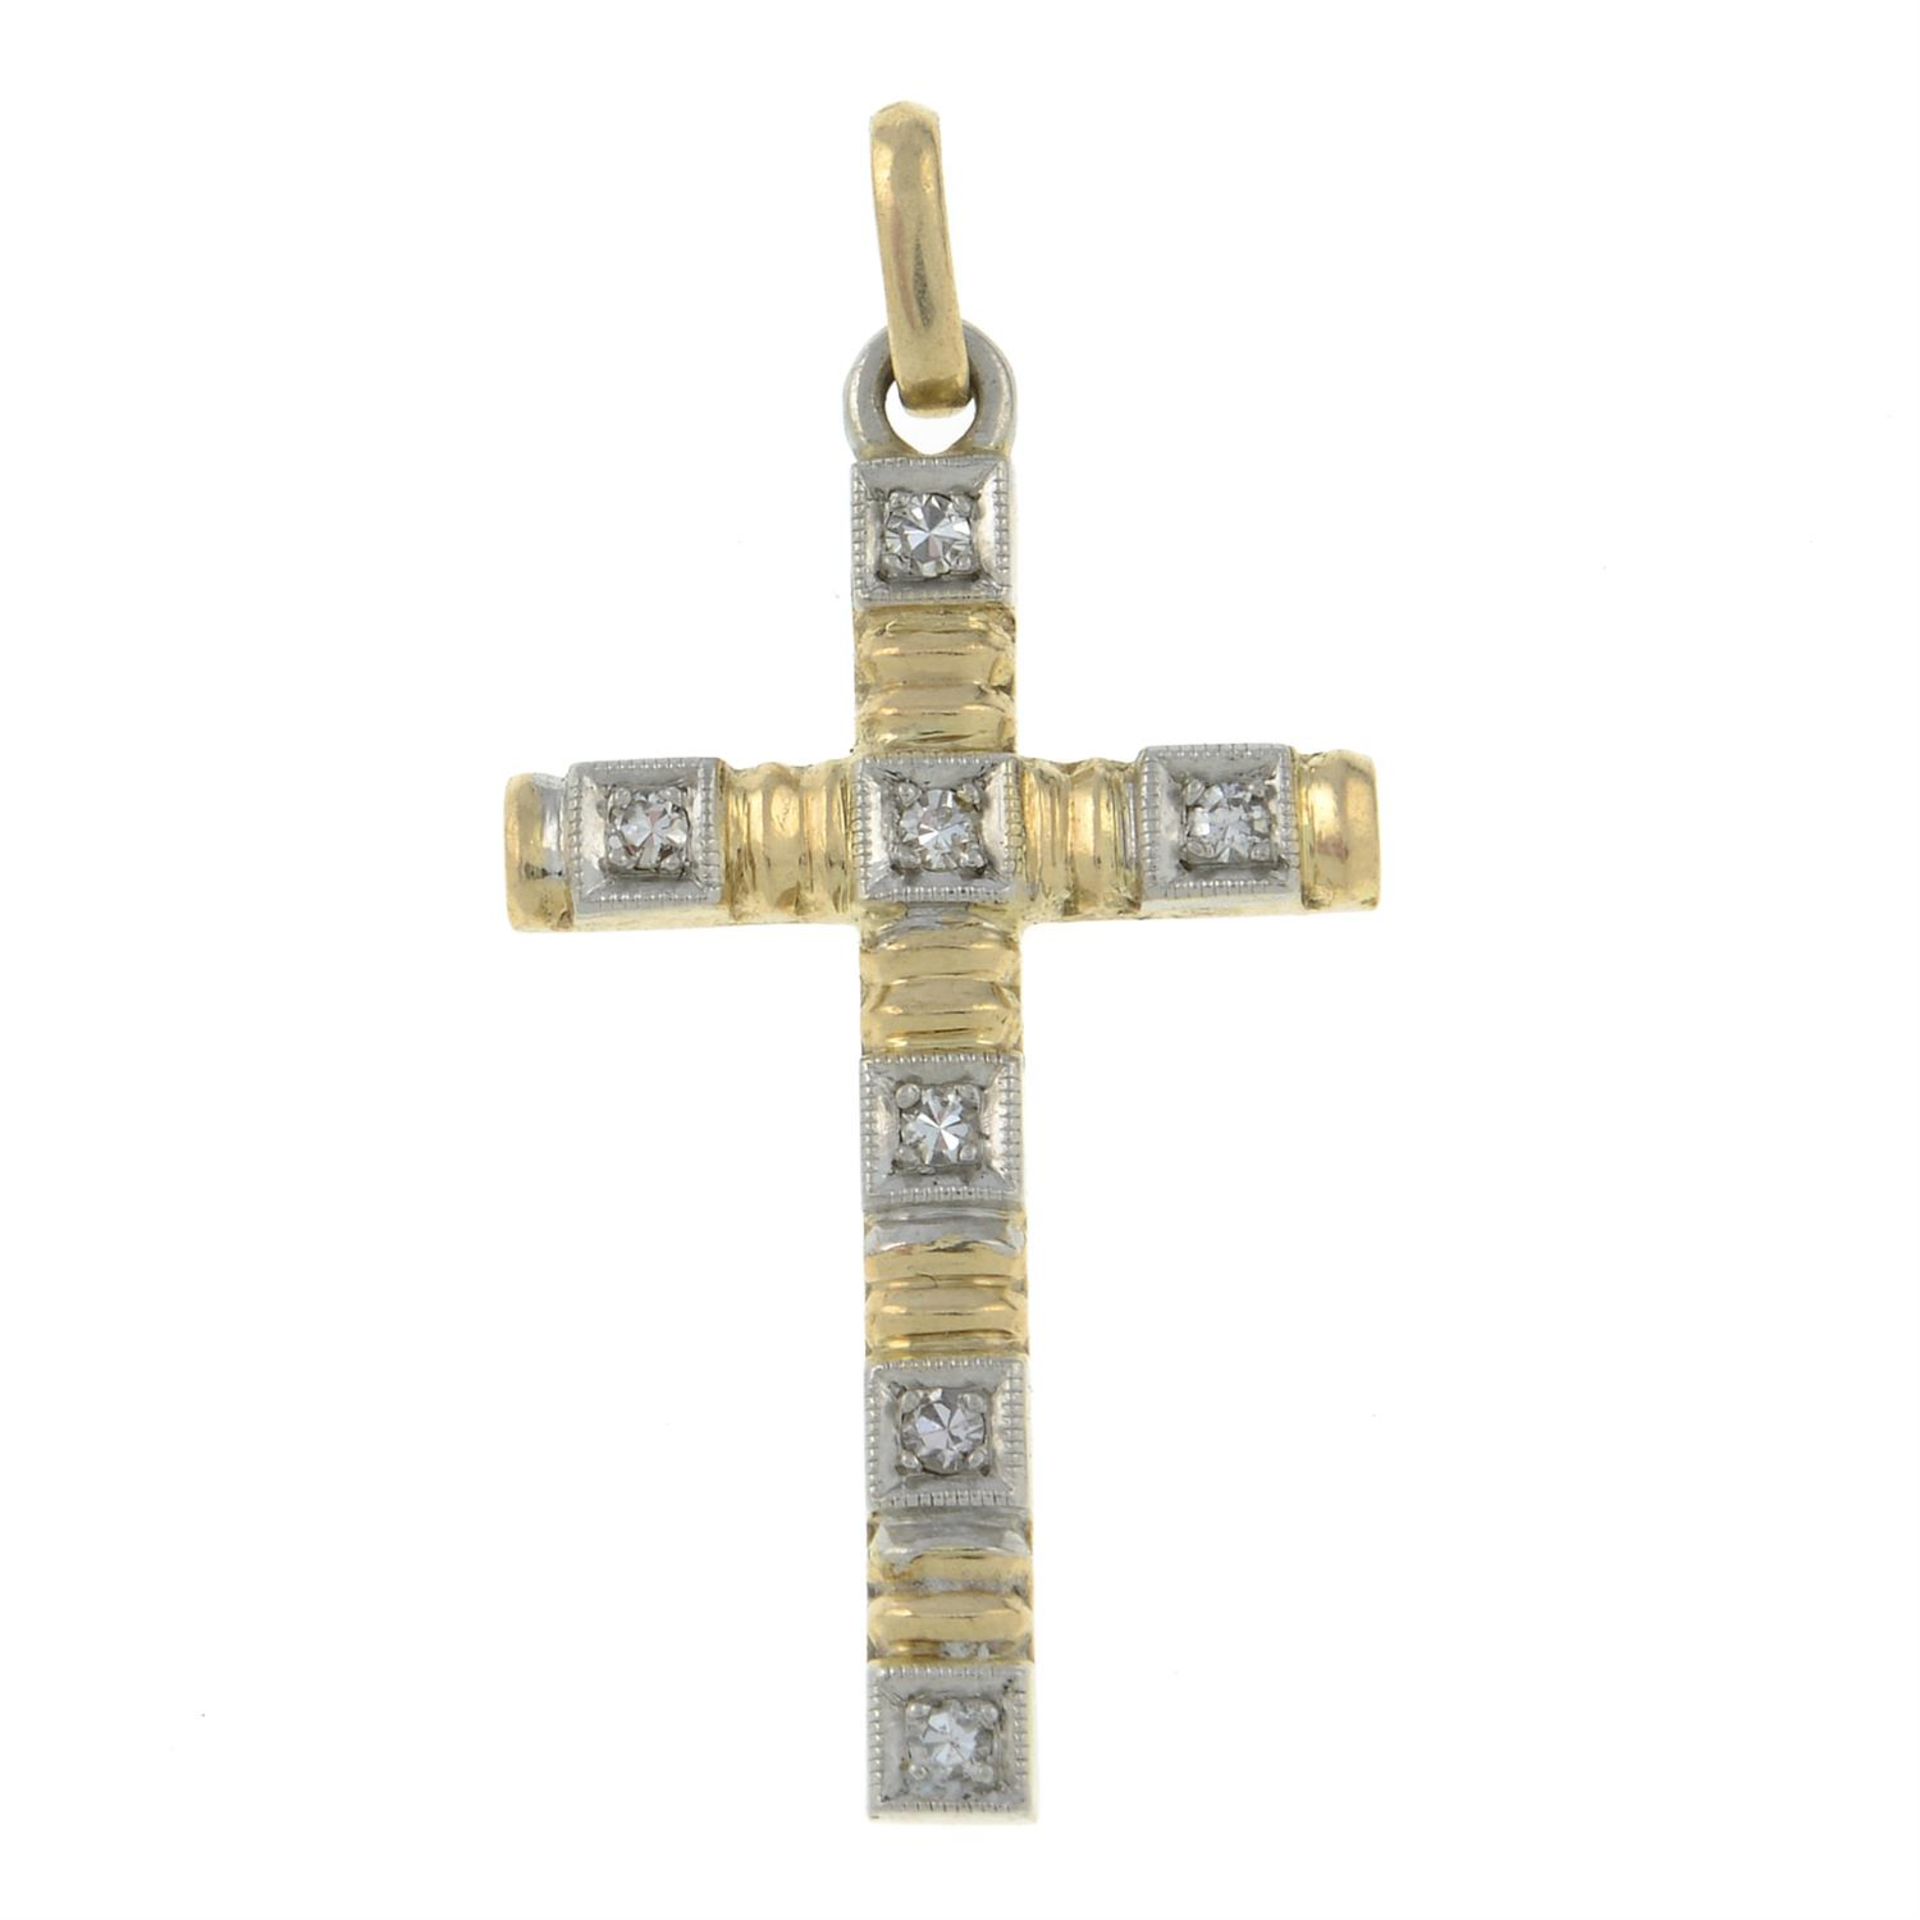 A mid 20th century 14ct diamond cross pendant.